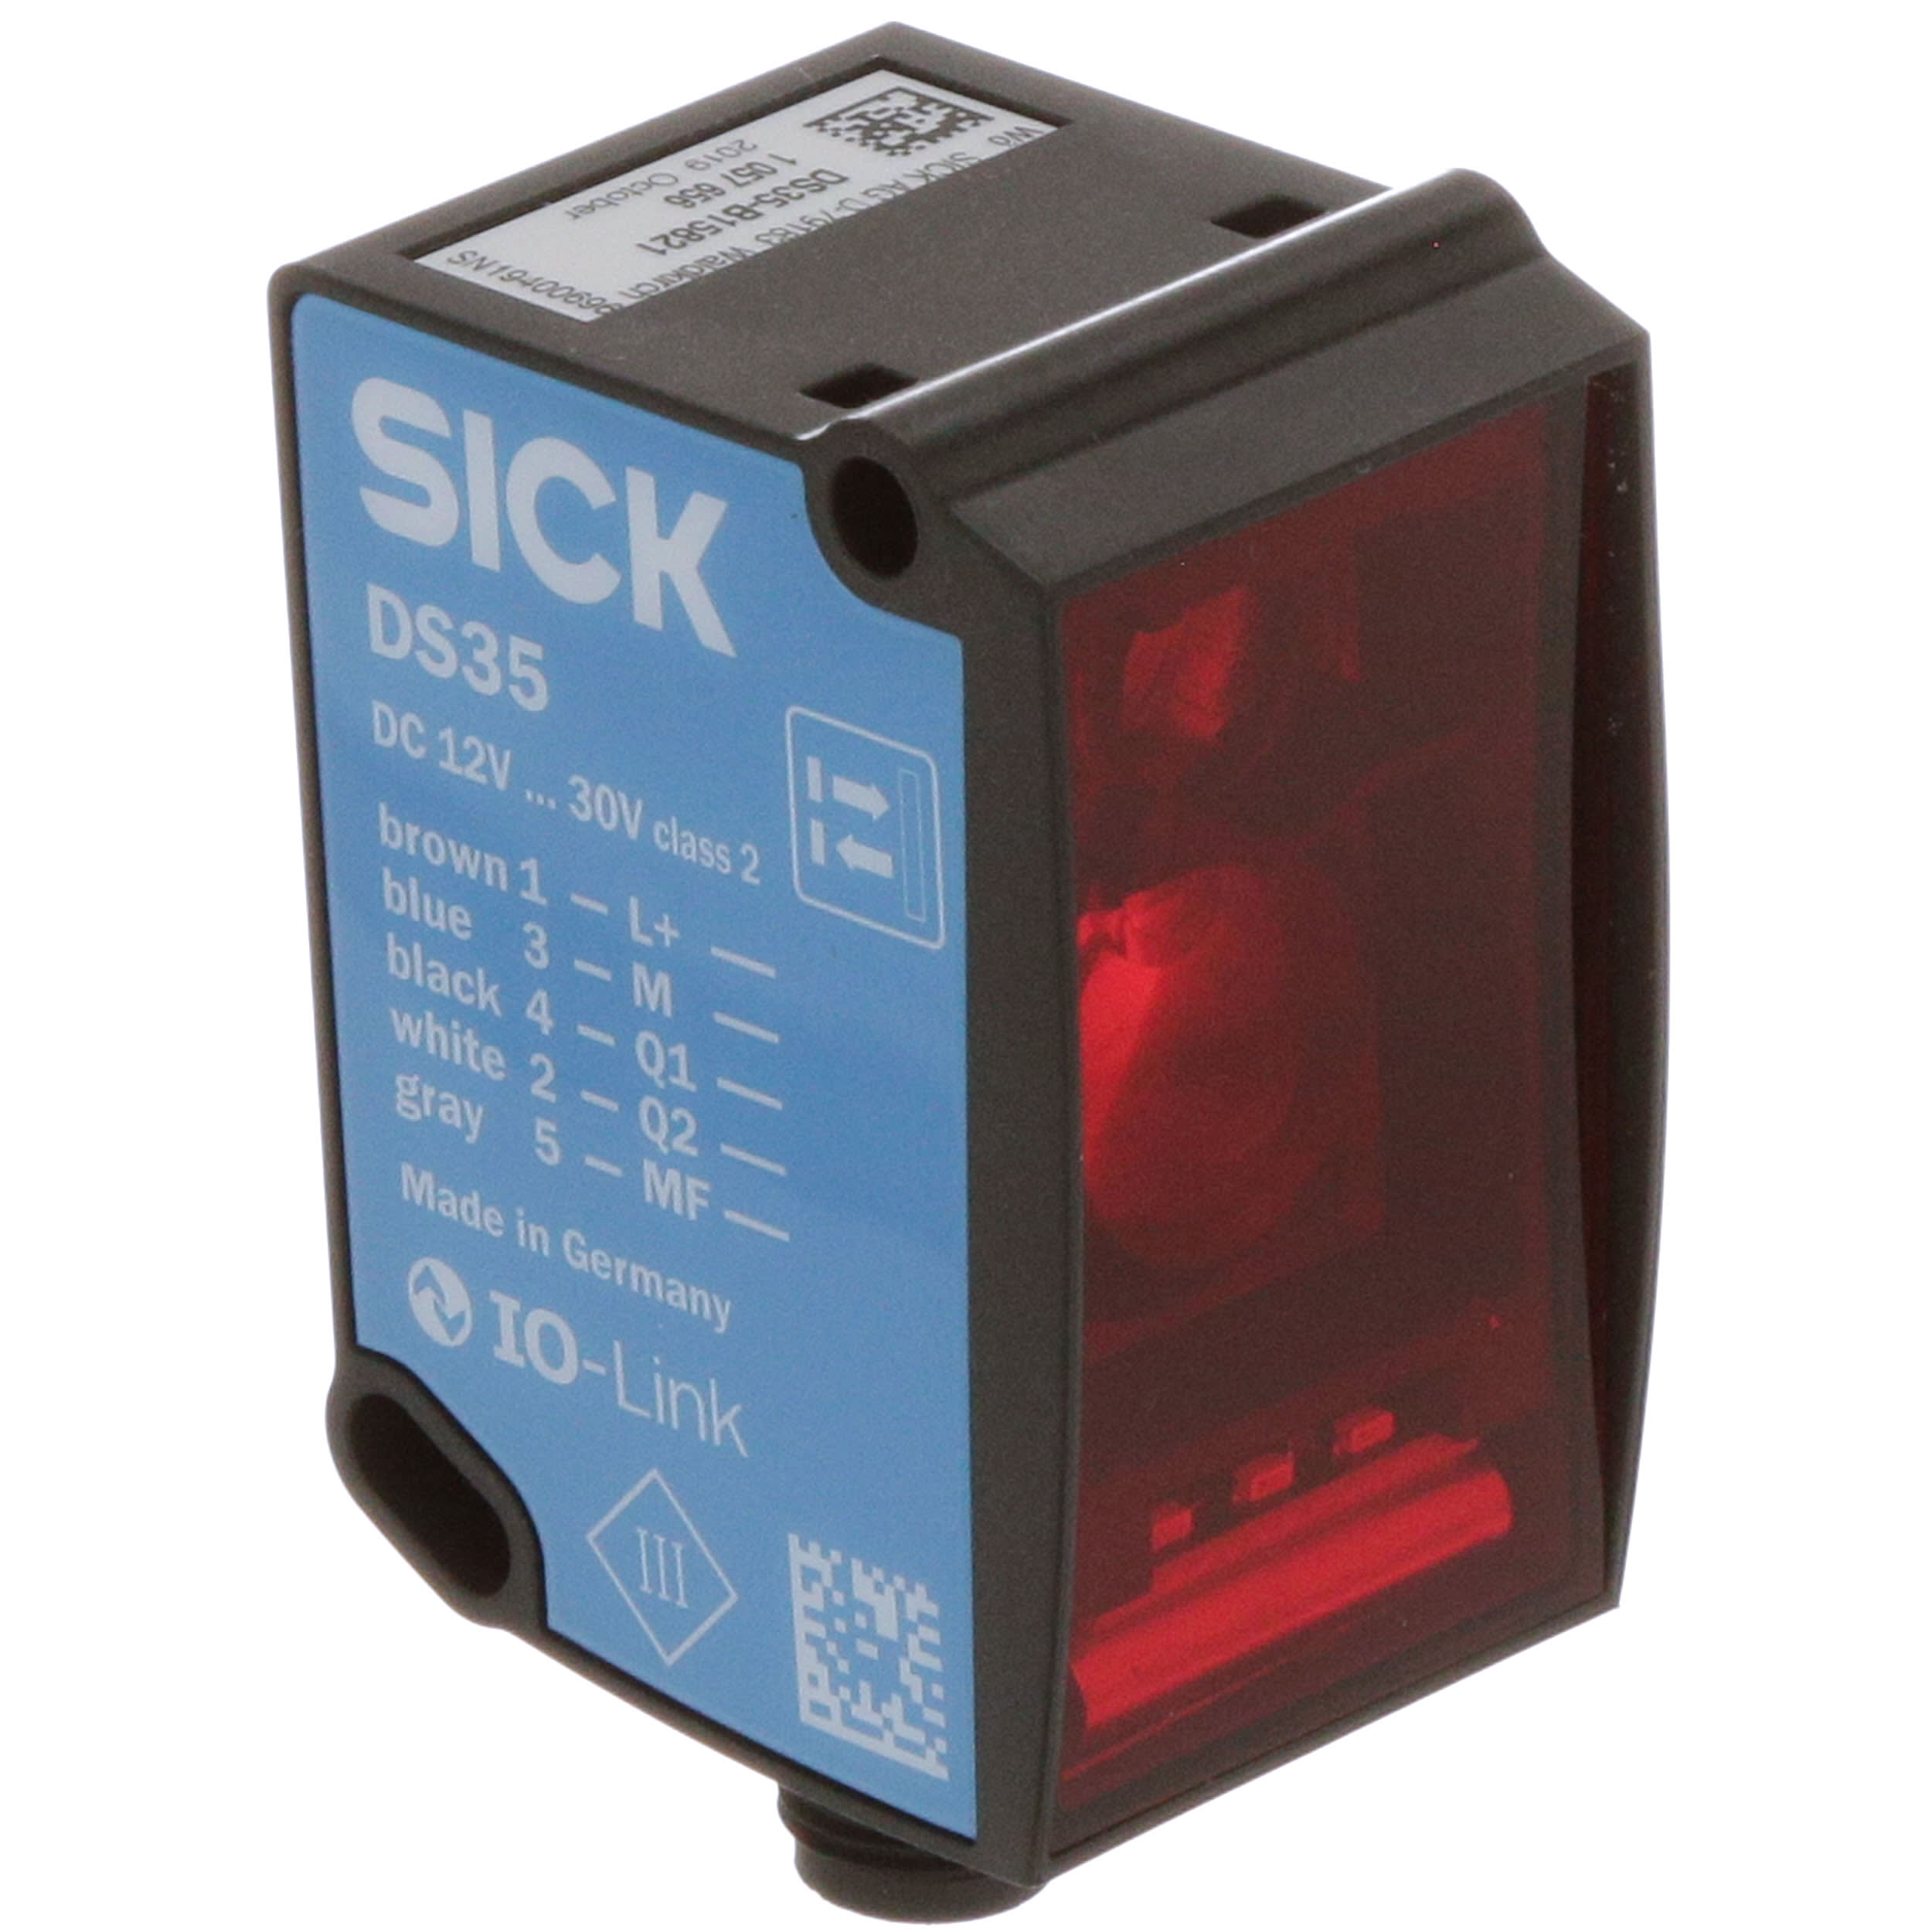 SICK - DS35-B15821 - Mid range distance sensors Dx35 - RS